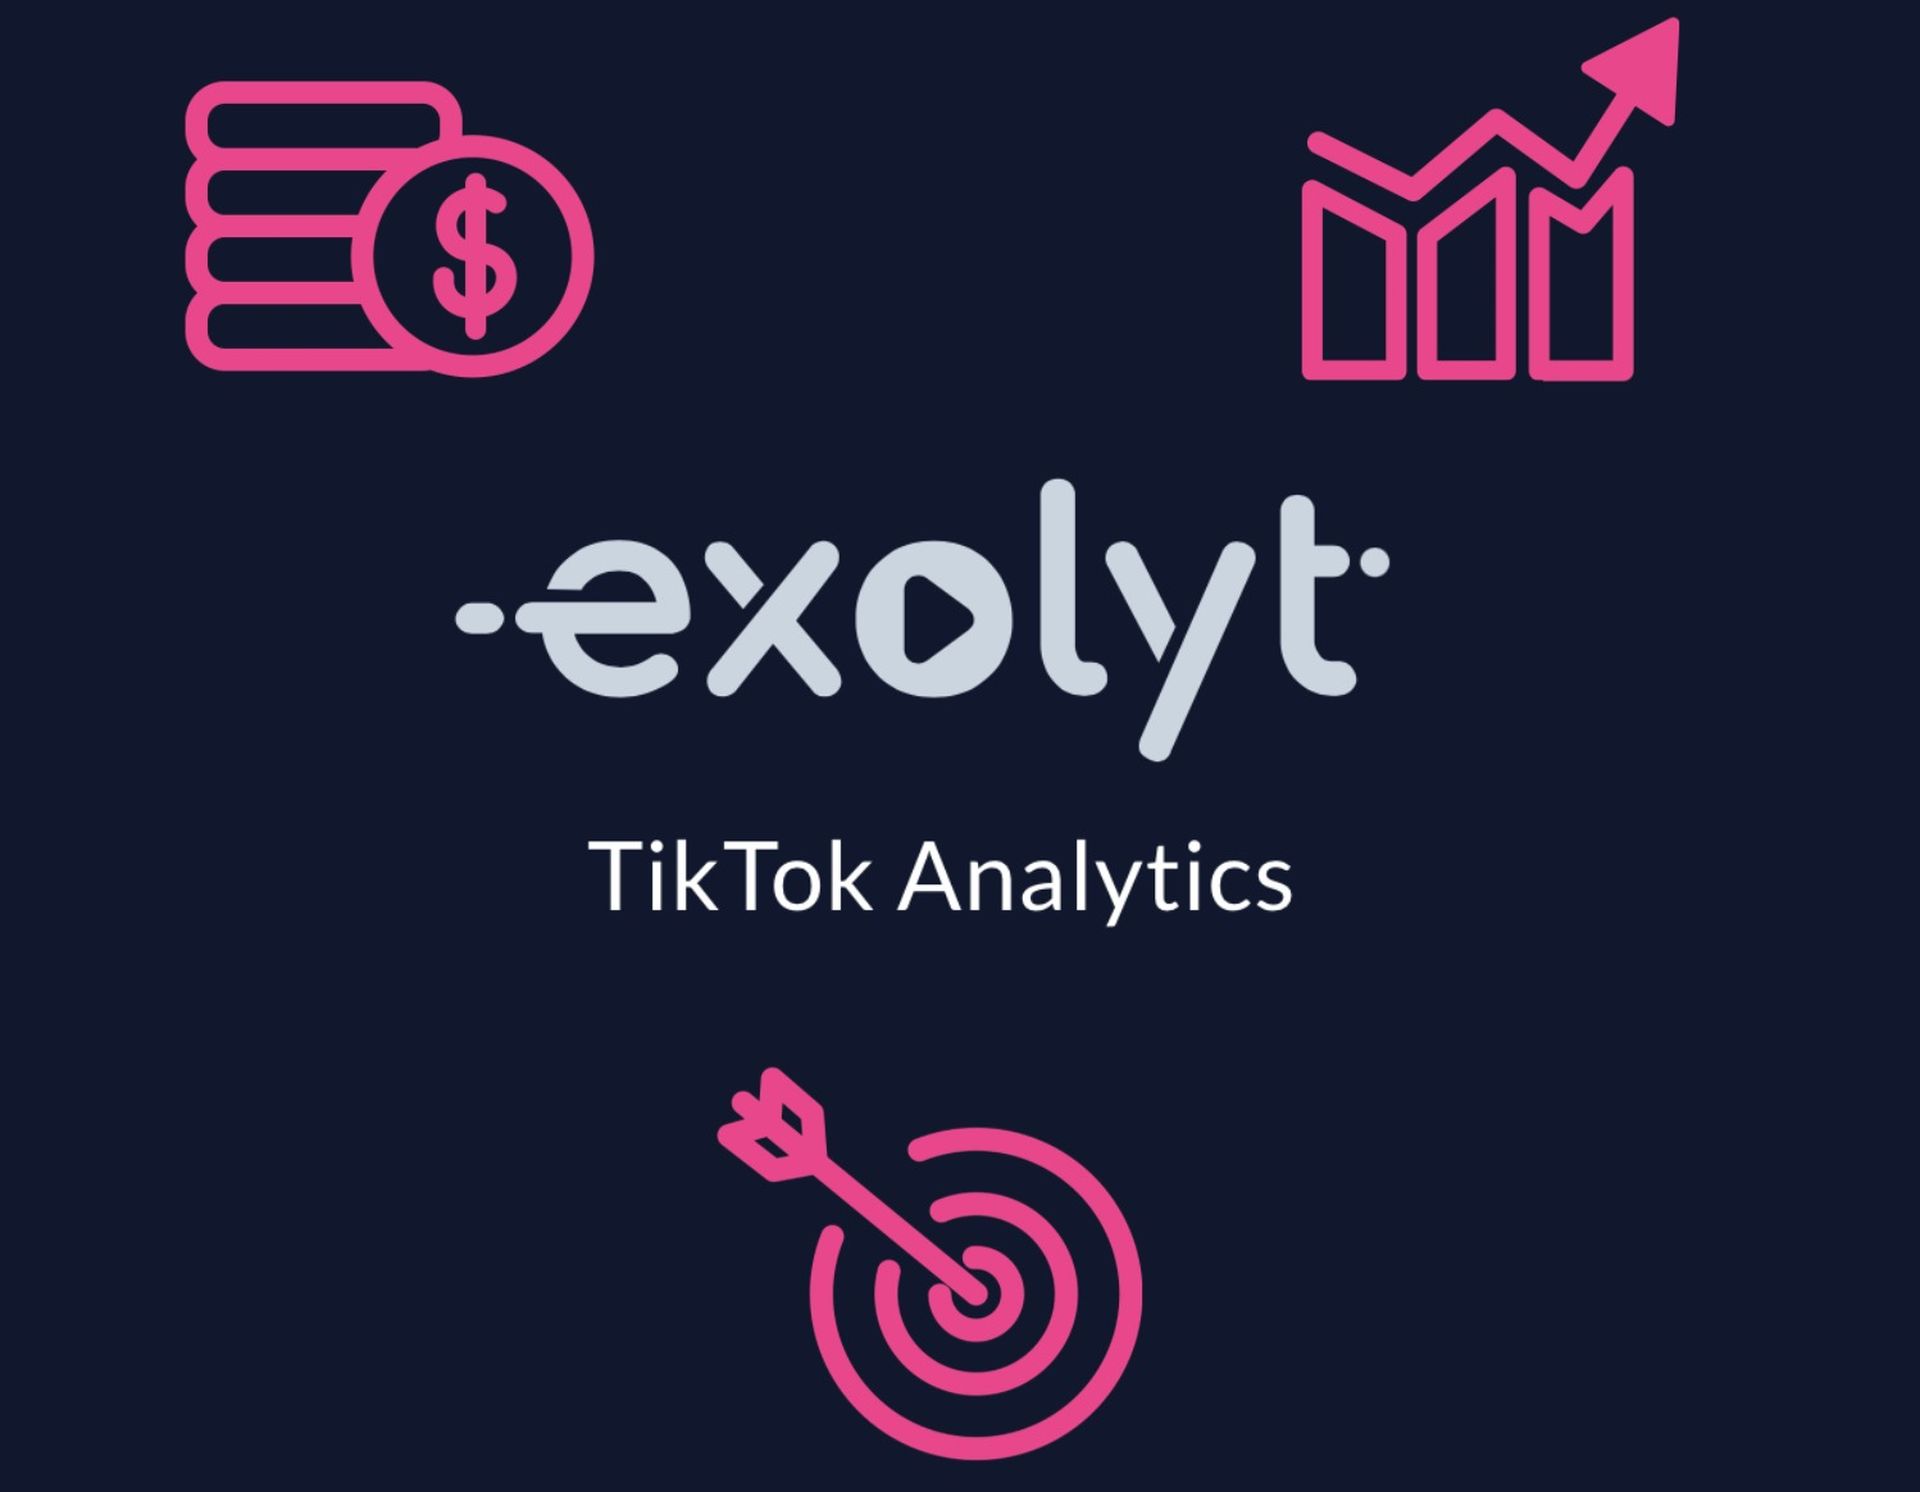 今日は、TikTok計算機Exolytとは何かをお伝えします。これは、インフルエンサーになってお金を稼ぐための分析ツールです。